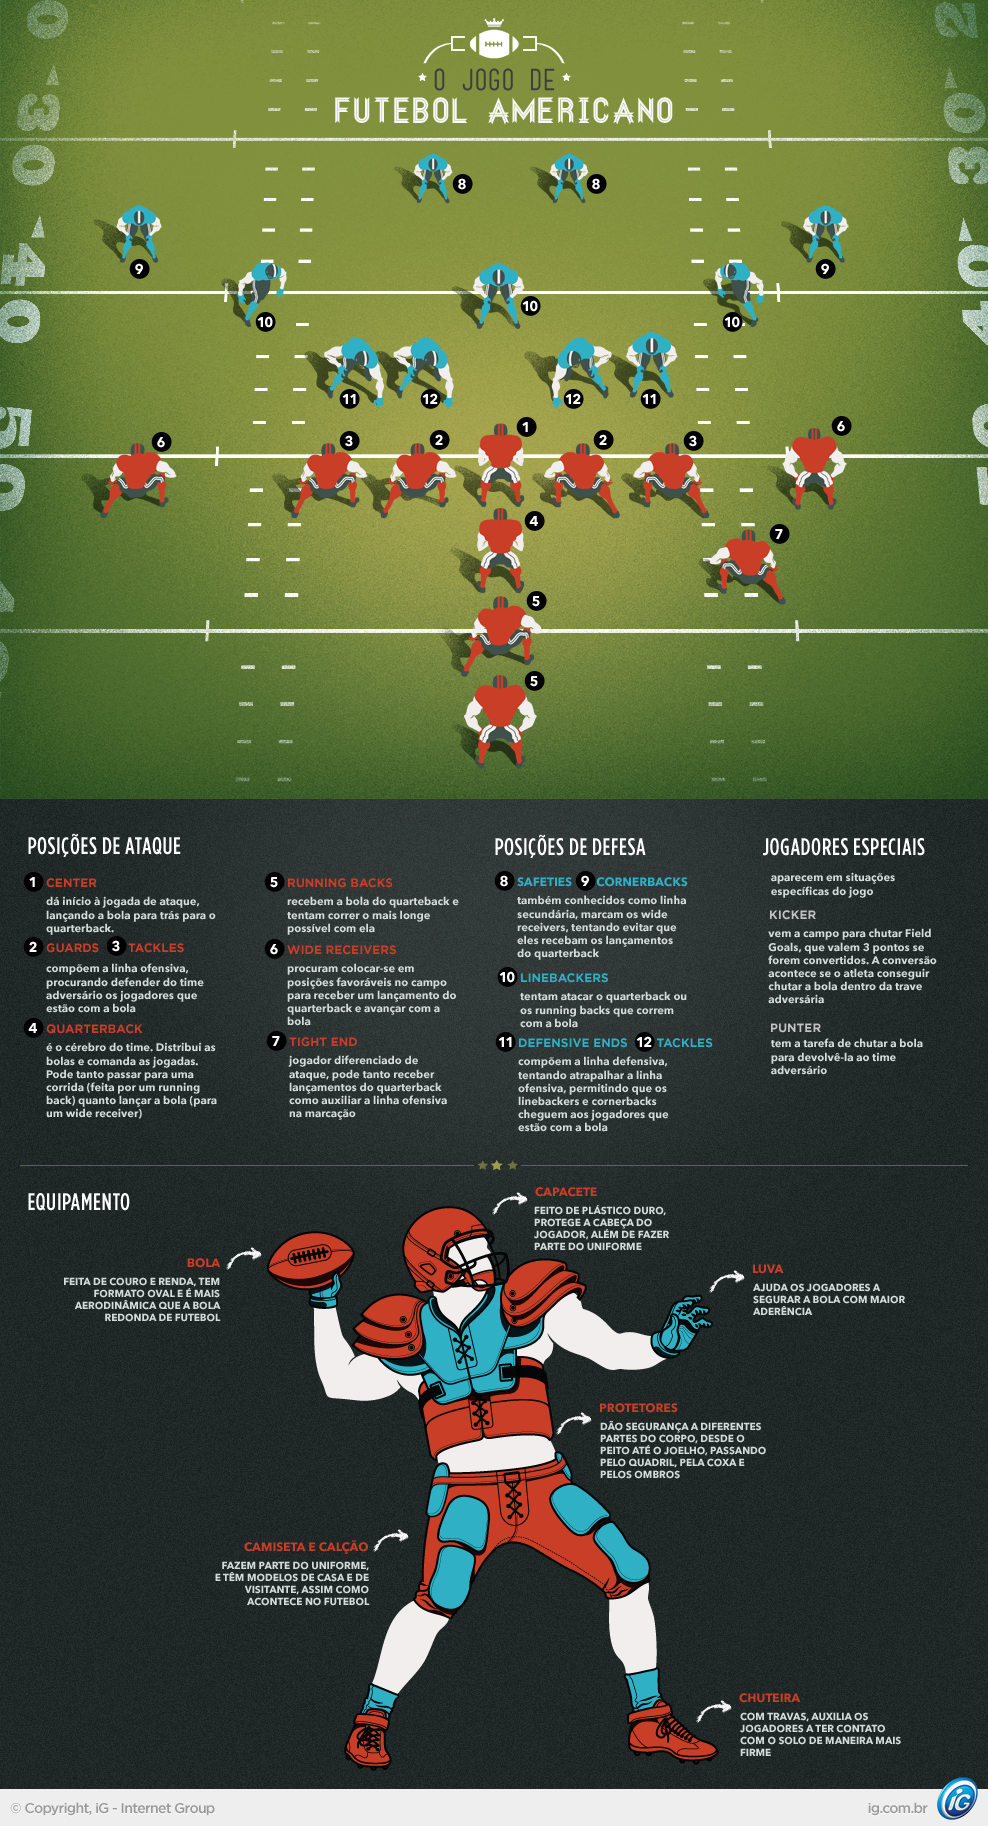 Futebol americano: campo, regras e história - Significados